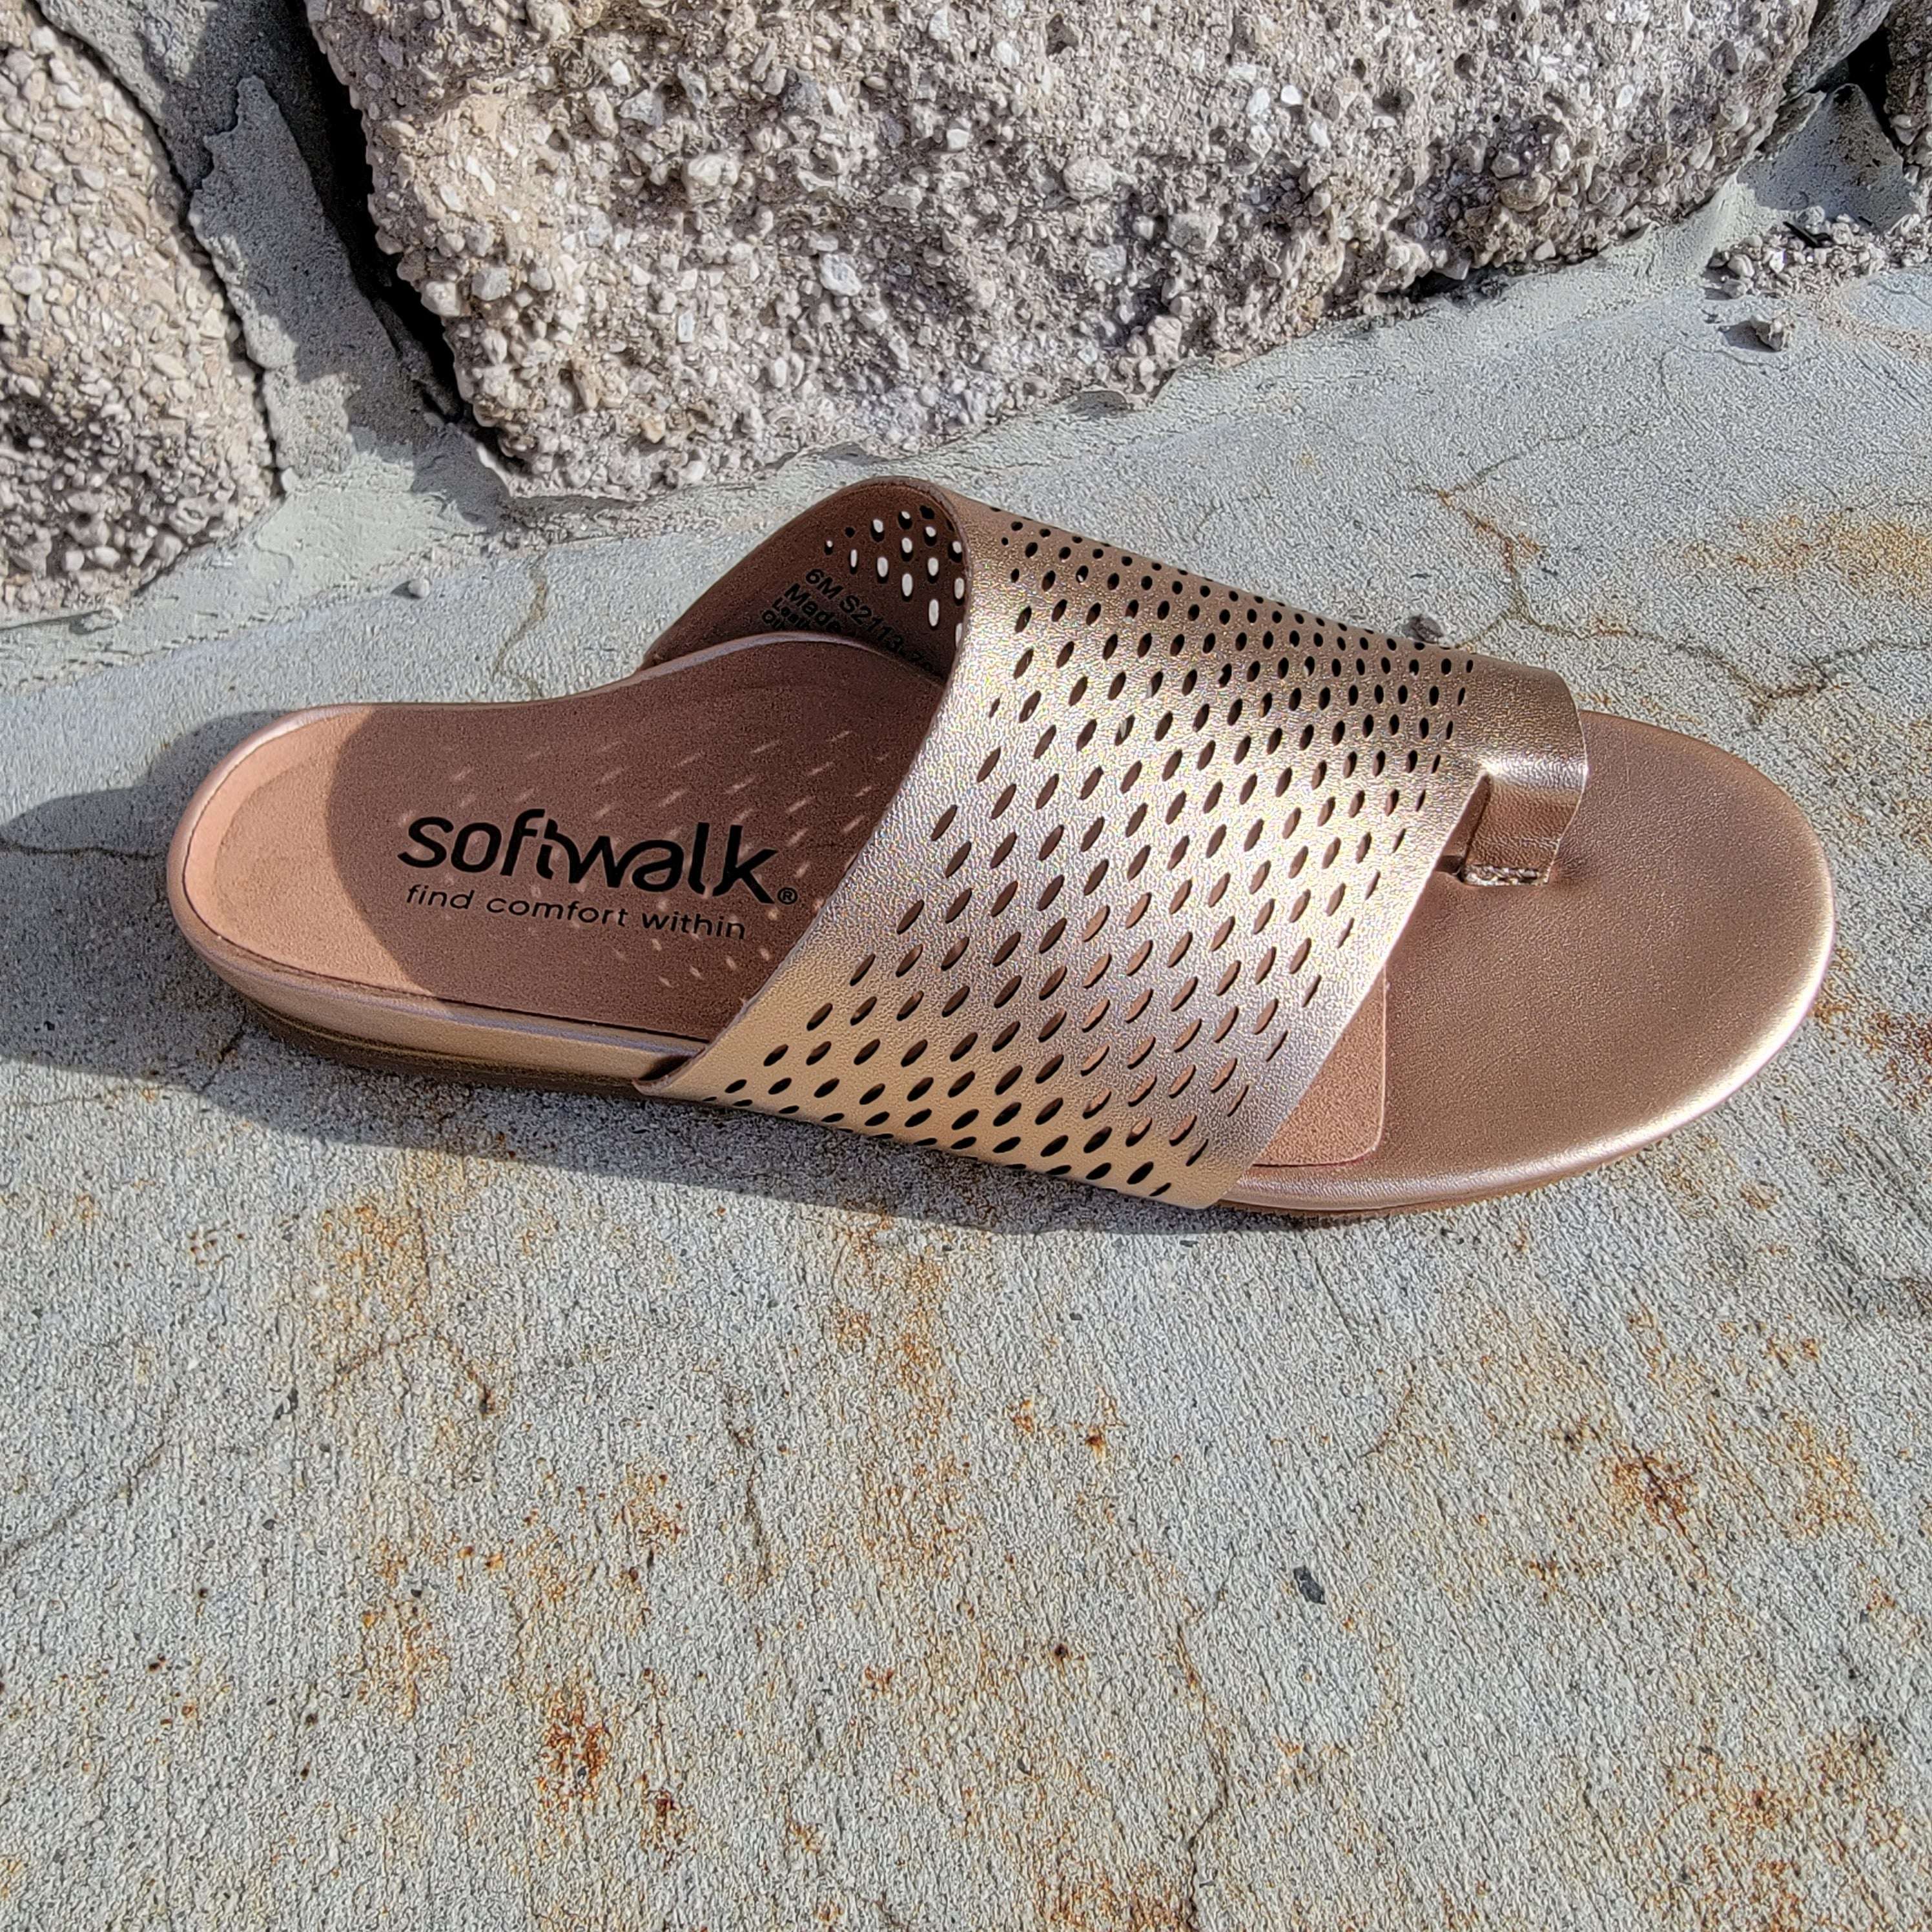 softwalk corsicasandalssoftwalkplum bottom 30830692